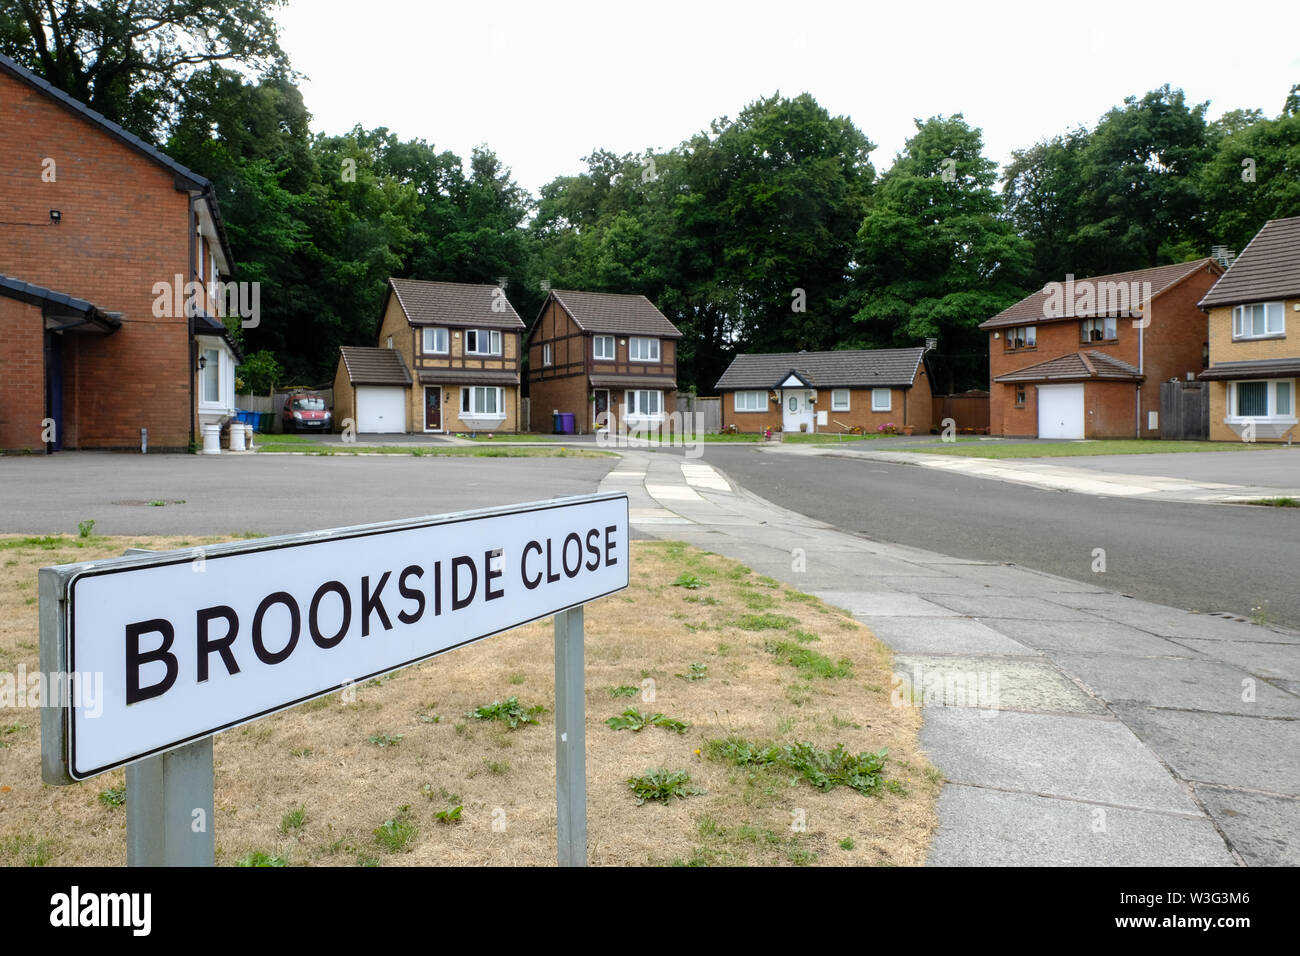 Brookside vicino a Liverpool (Regno Unito), film dedicato ubicazione impostata per il famoso canale 4 soap opera / Serie TV "Brookside vicino' che correva da 1982 Foto Stock